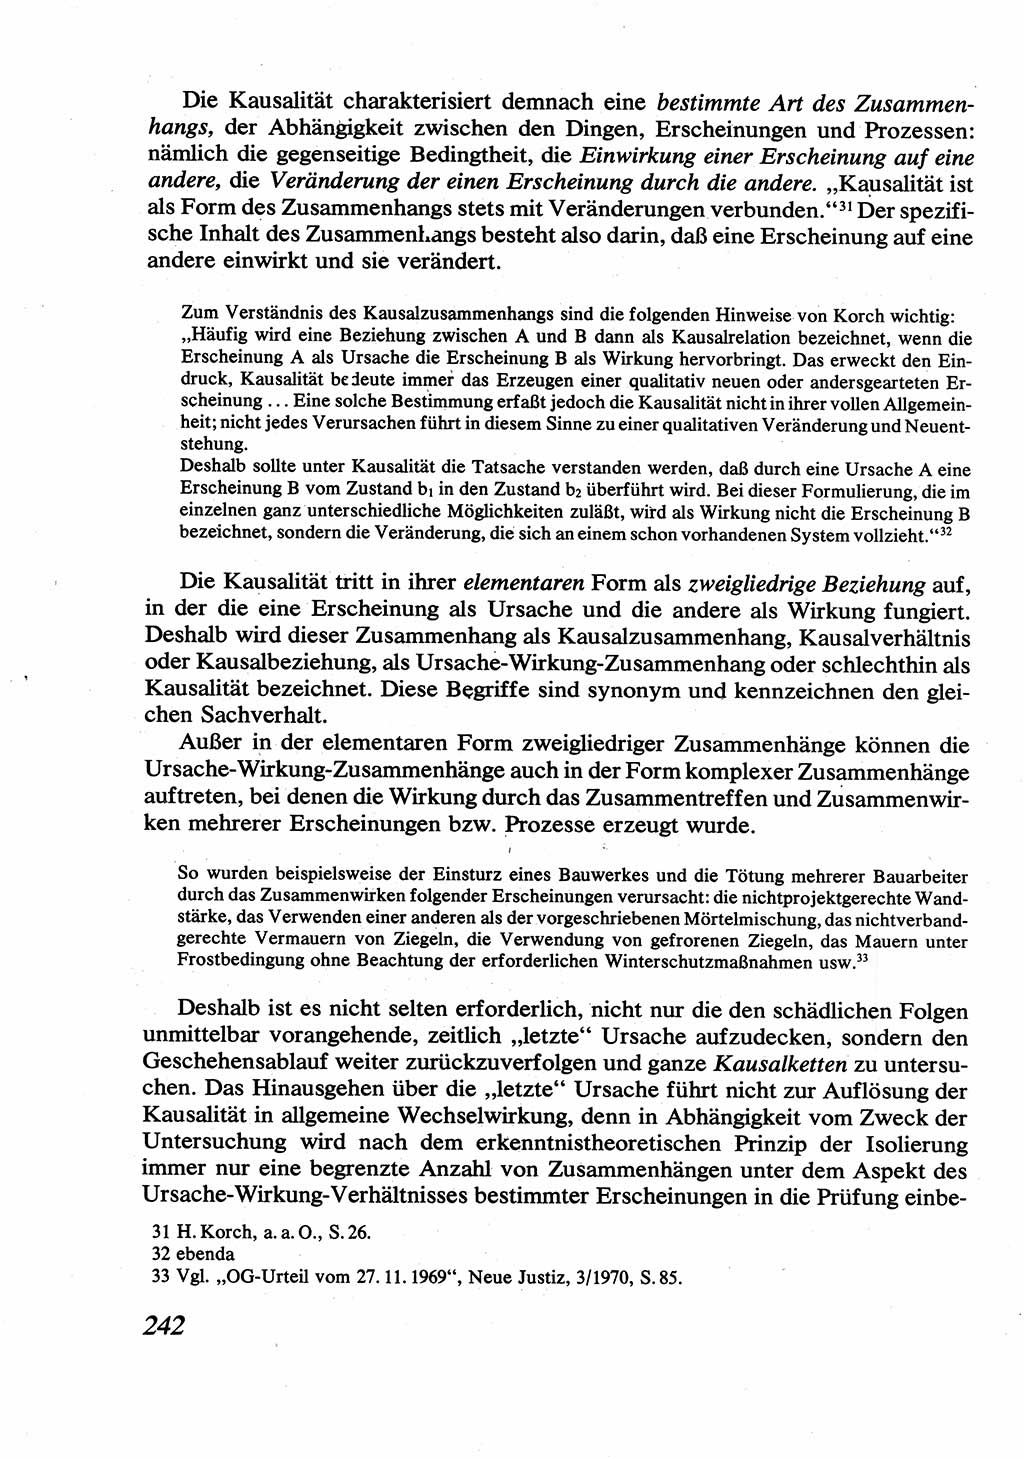 Strafrecht [Deutsche Demokratische Republik (DDR)], Allgemeiner Teil, Lehrbuch 1976, Seite 242 (Strafr. DDR AT Lb. 1976, S. 242)